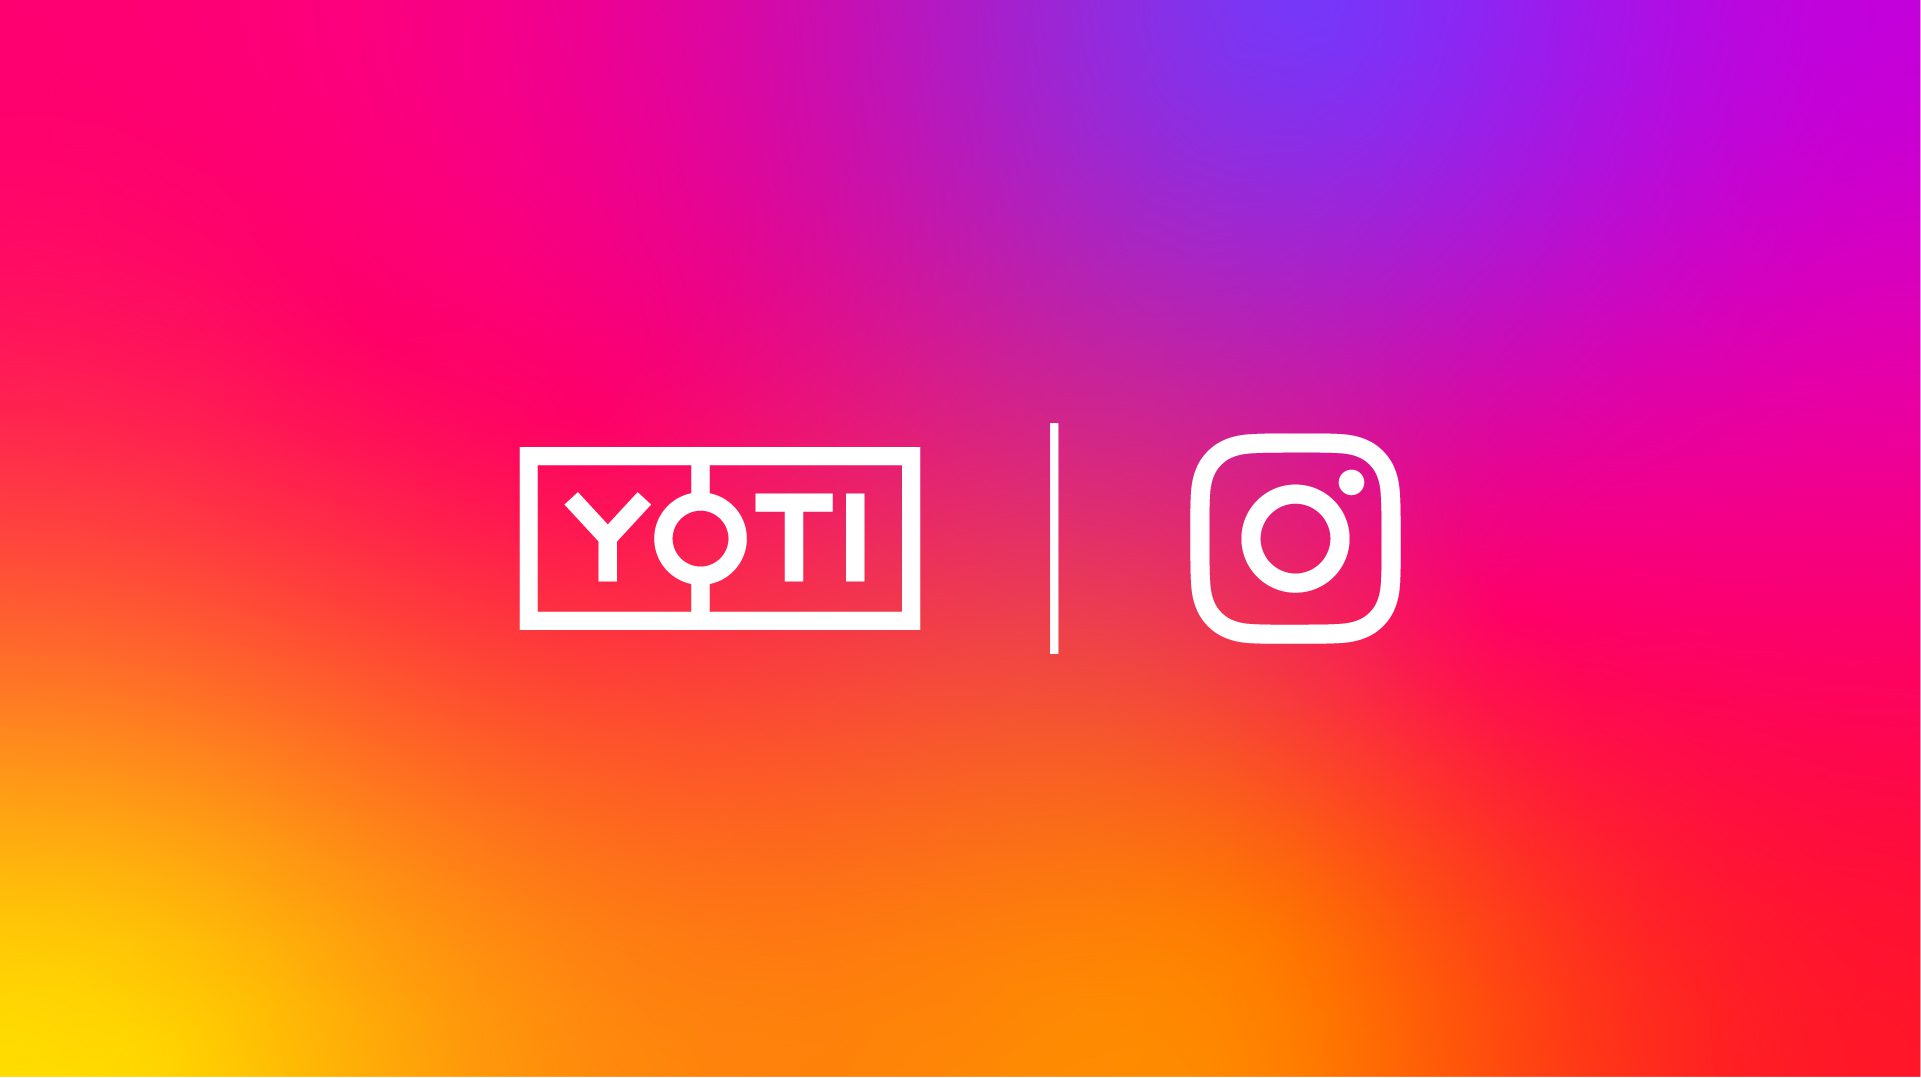 Spoločnosť Yoti a sociálna sieť Instagram